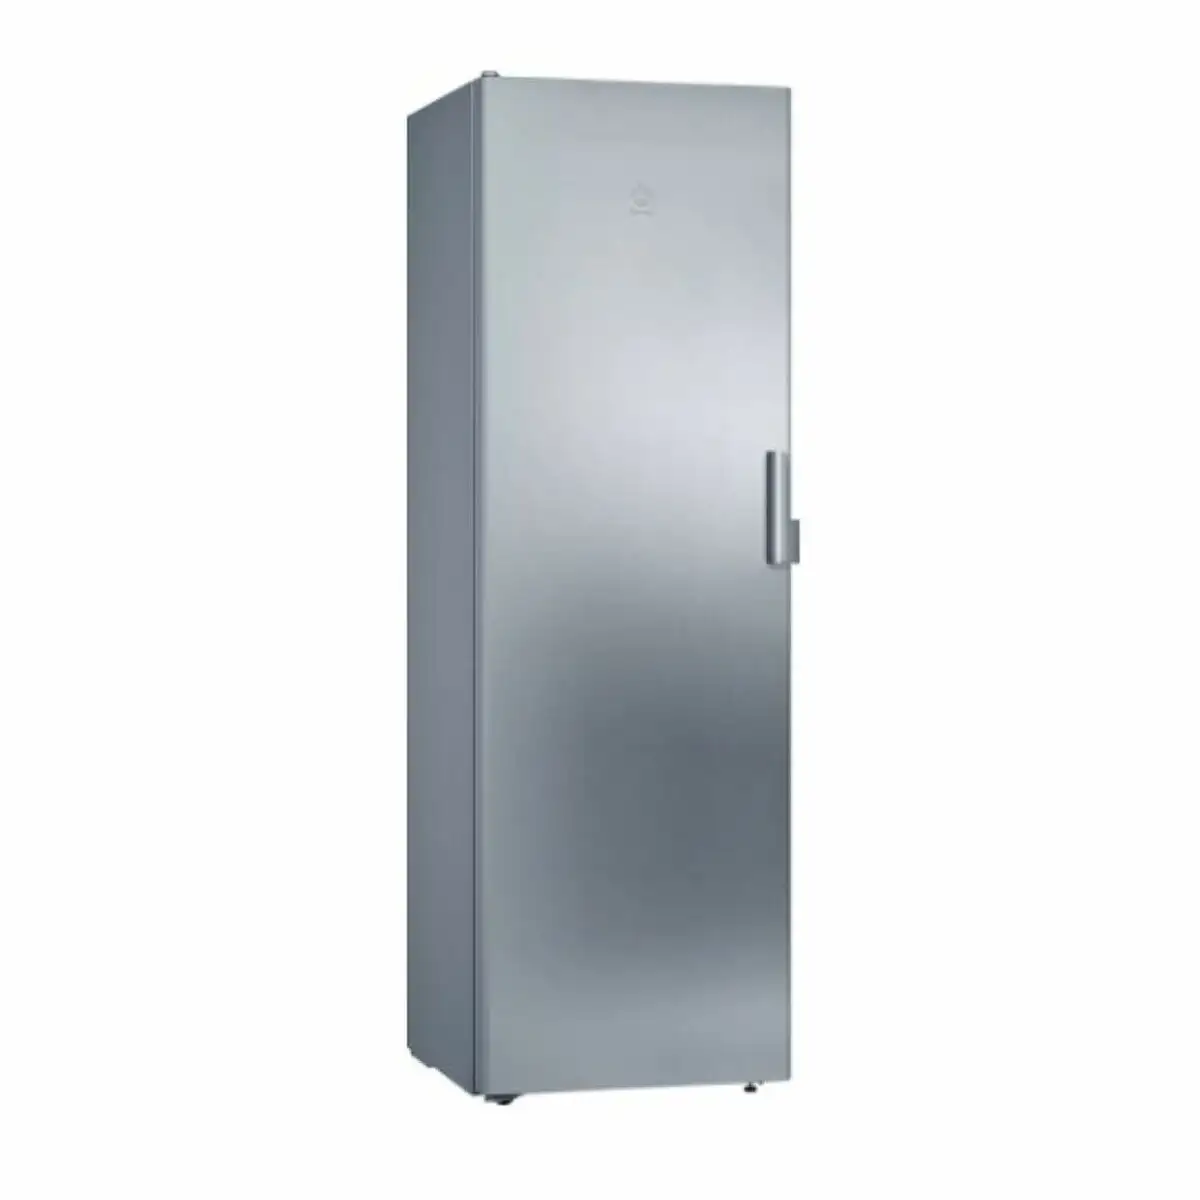 Refrigerateur balay 3fce563me 186 x 60 cm _2669. DIAYTAR SENEGAL - Votre Portail Vers l'Exclusivité. Explorez notre boutique en ligne pour trouver des produits uniques et exclusifs, conçus pour les amateurs de qualité.